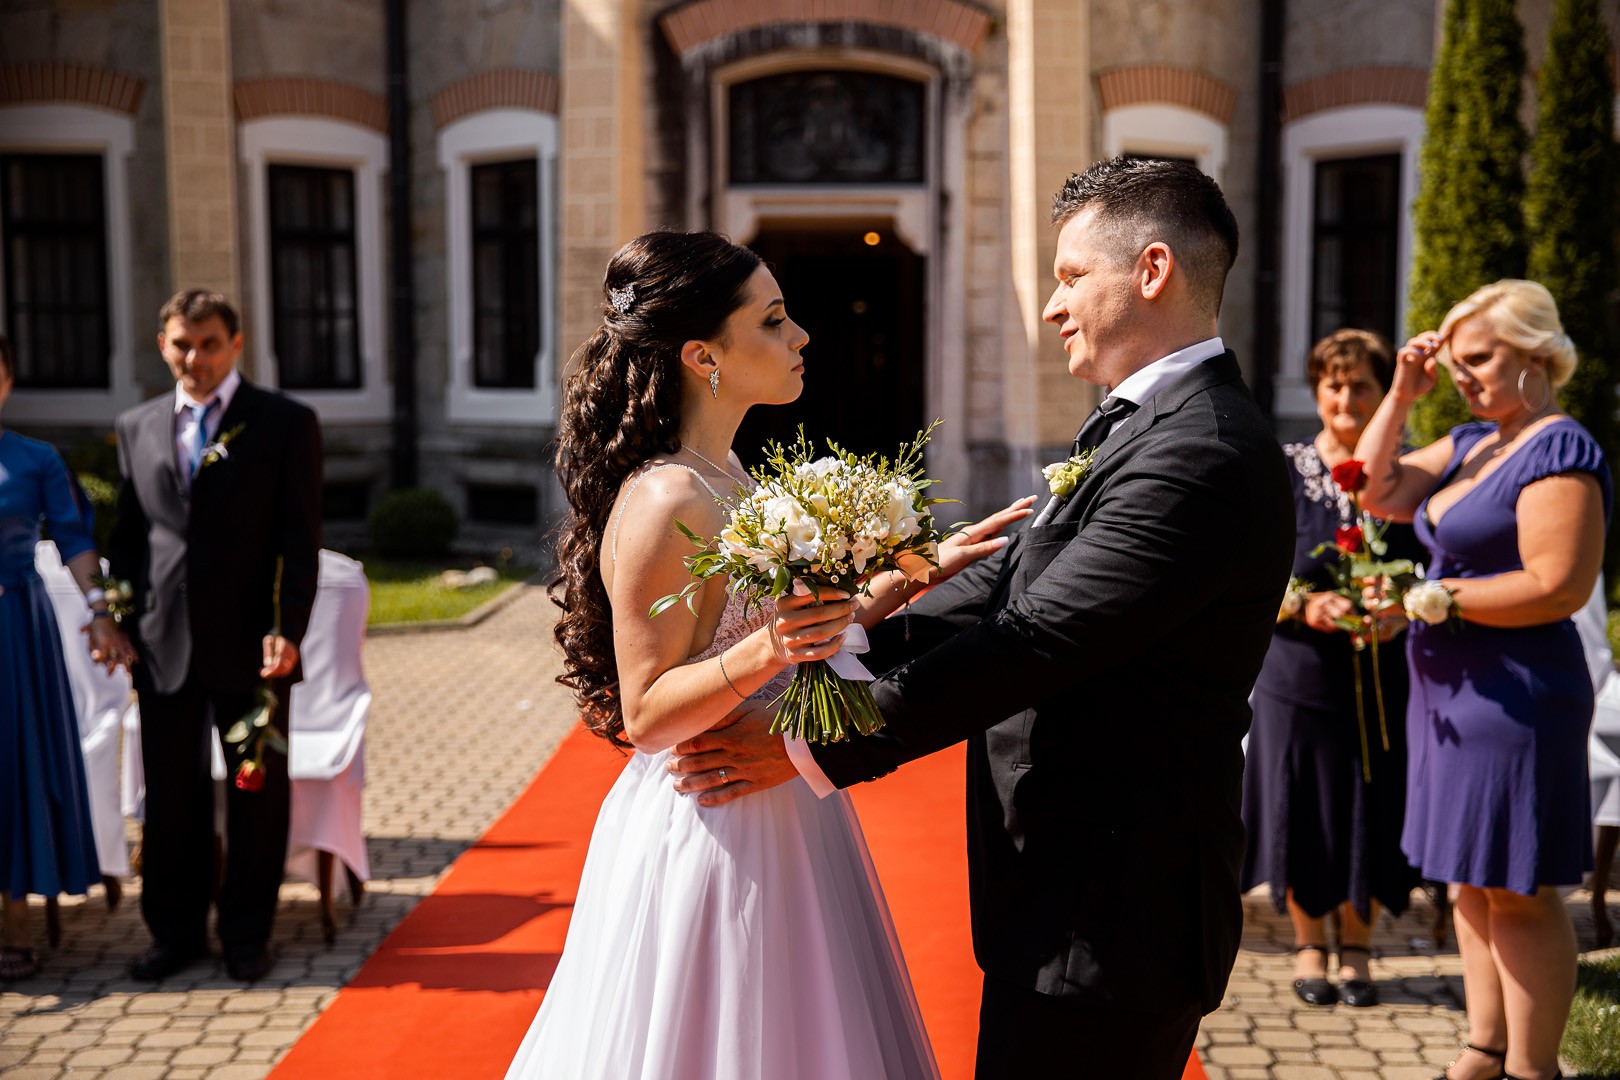 Picturesque dream wedding of Kloudy & Michal in Hluboká nad Vltavou. - 0180.jpg